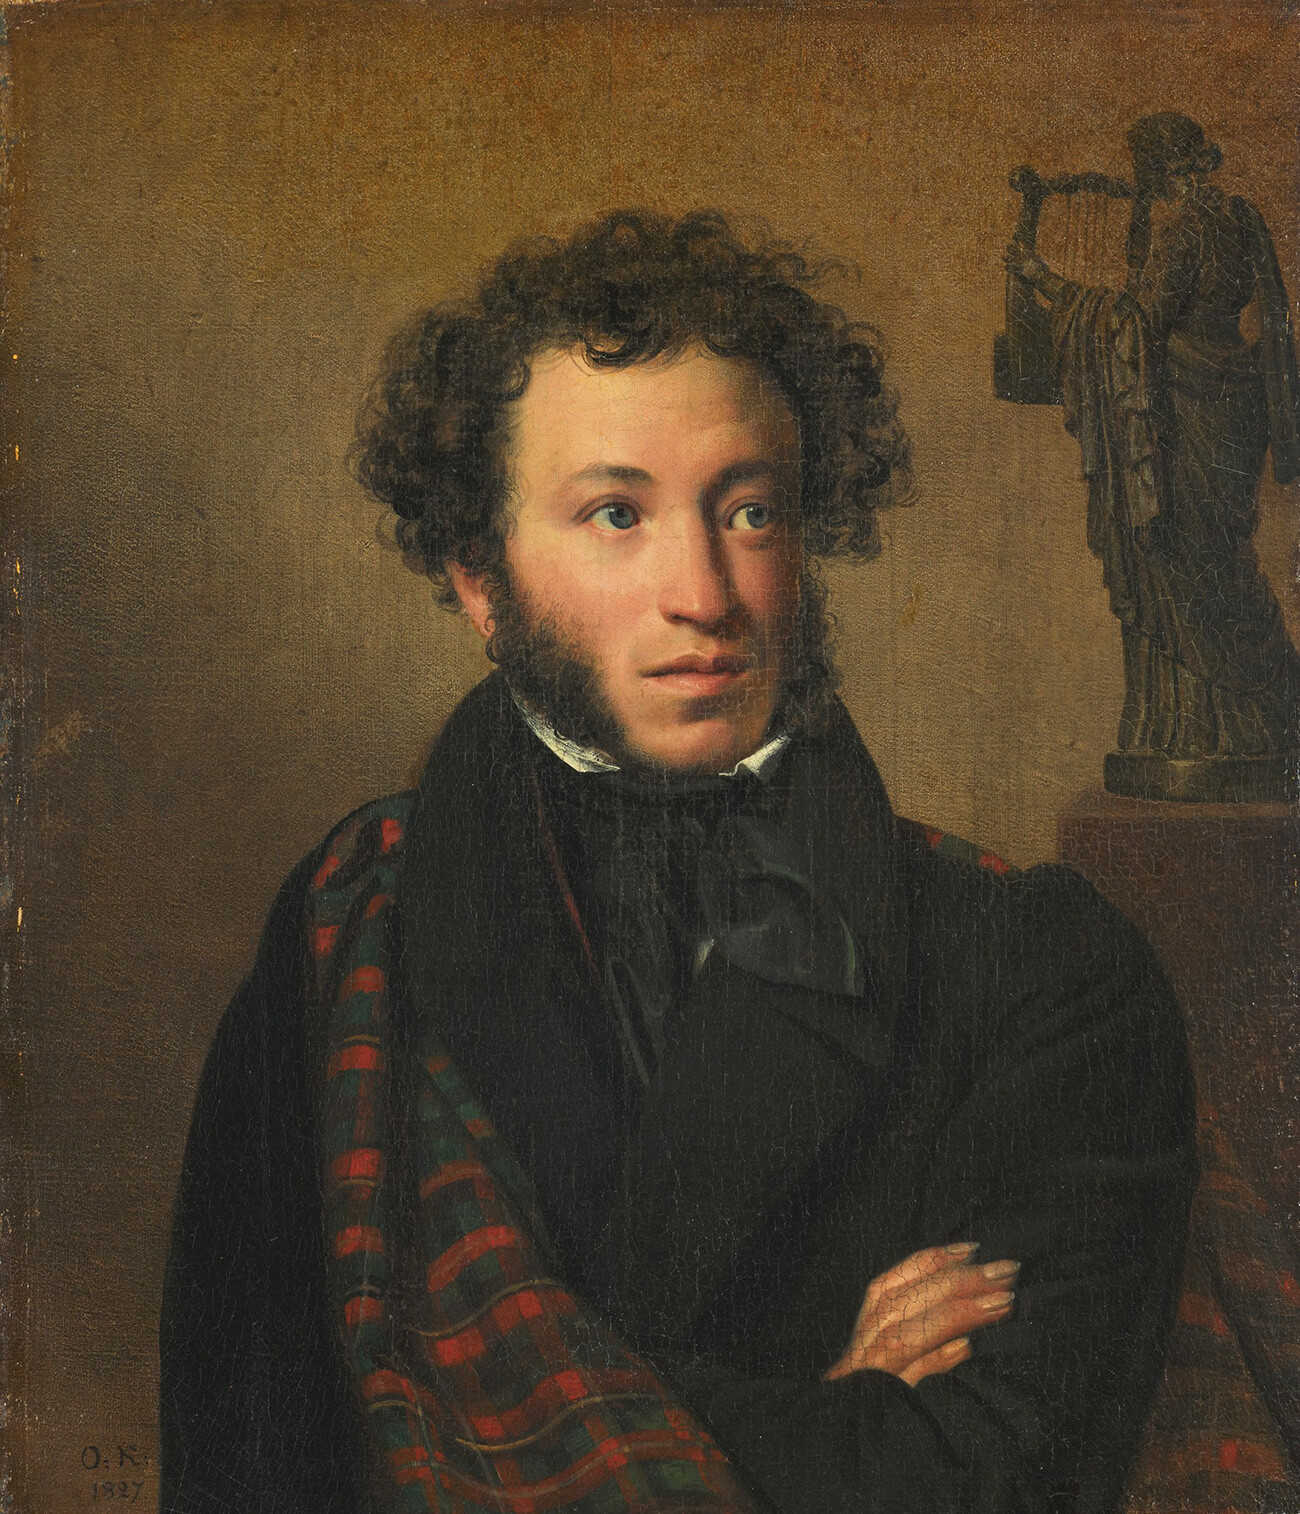 Retrato de Aleksandr Púchkin, por Orest Kiprénski, 1827.